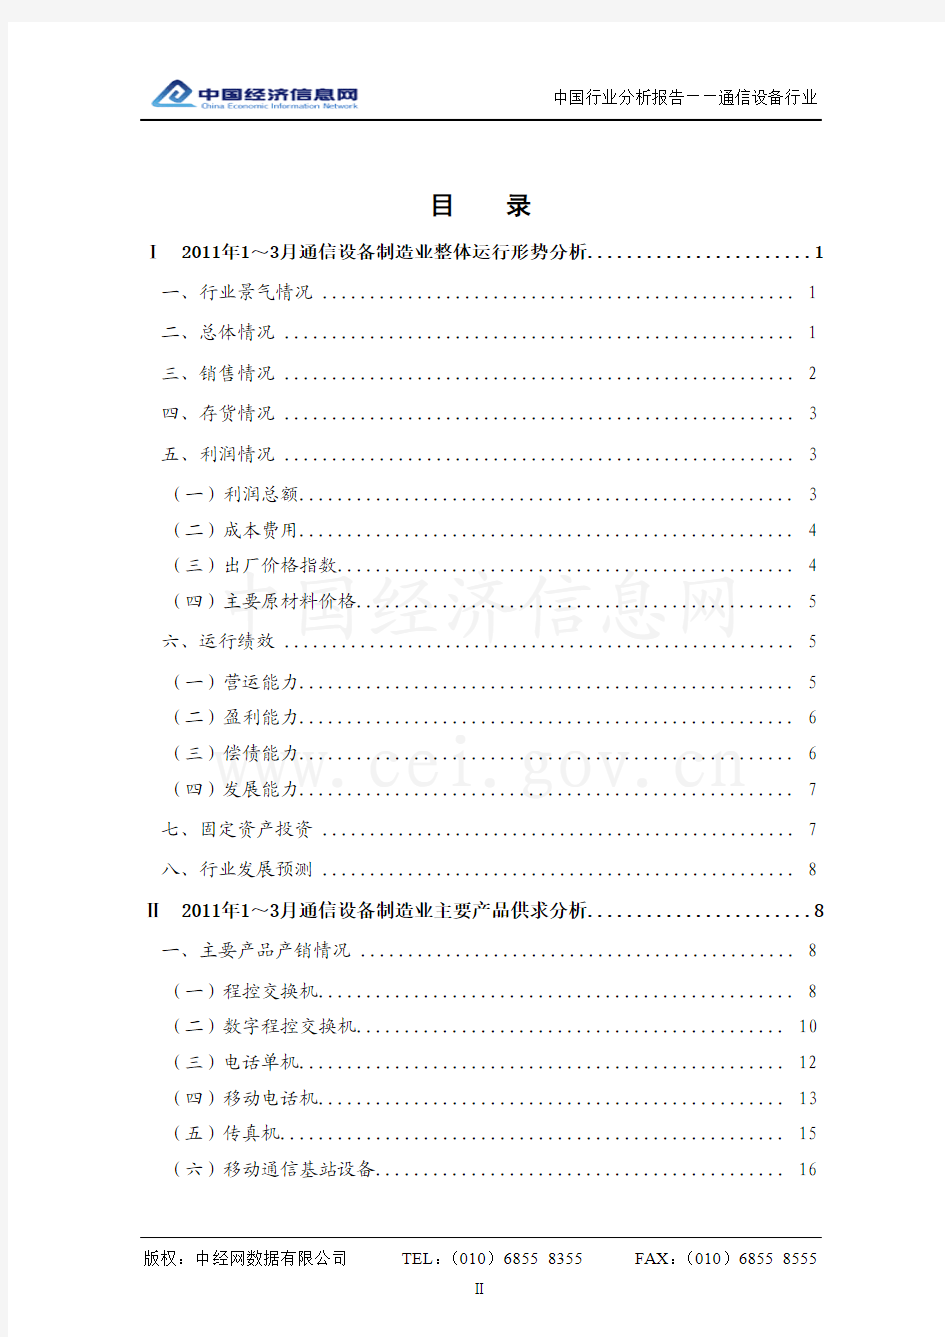 中国通信设备行业分析报告(2011年1季度)